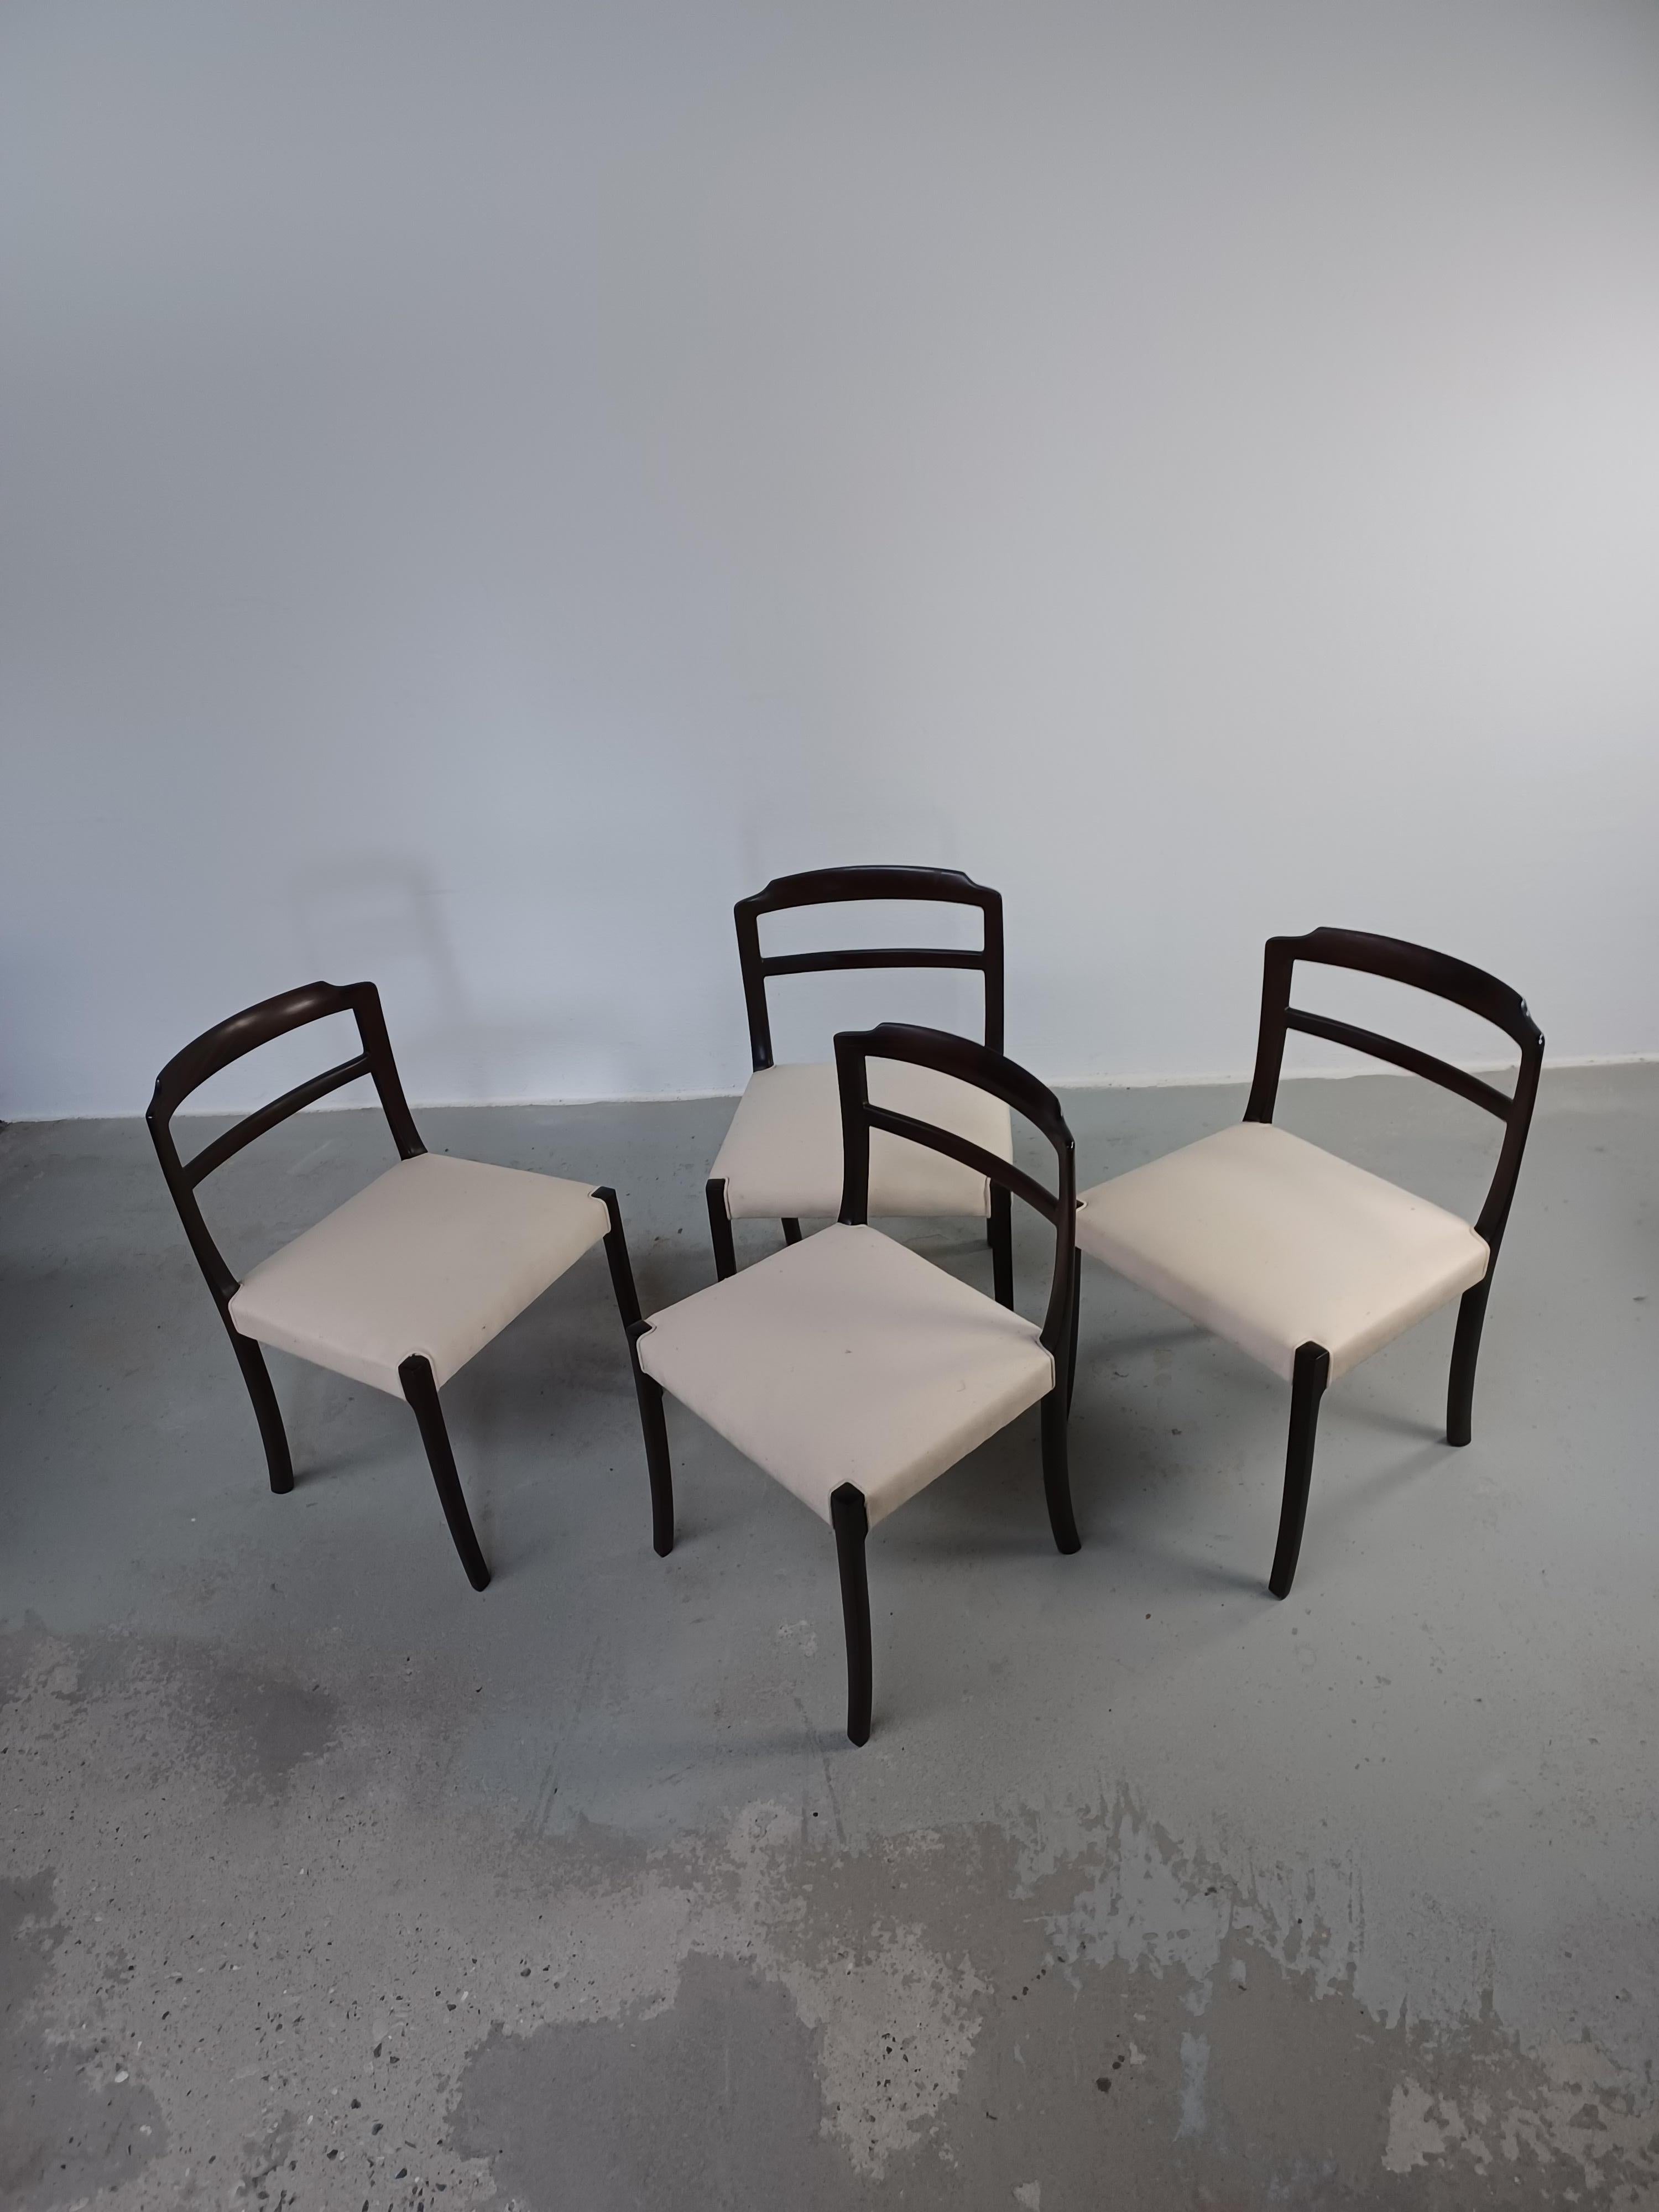 Quatre chaises de salle à manger en acajou Ole Wanscher des années 1960, entièrement restaurées, tapissées sur mesure.

L'ensemble présente un ensemble de chaises modernes du milieu du siècle, bien conçues et bien fabriquées, avec le sens des